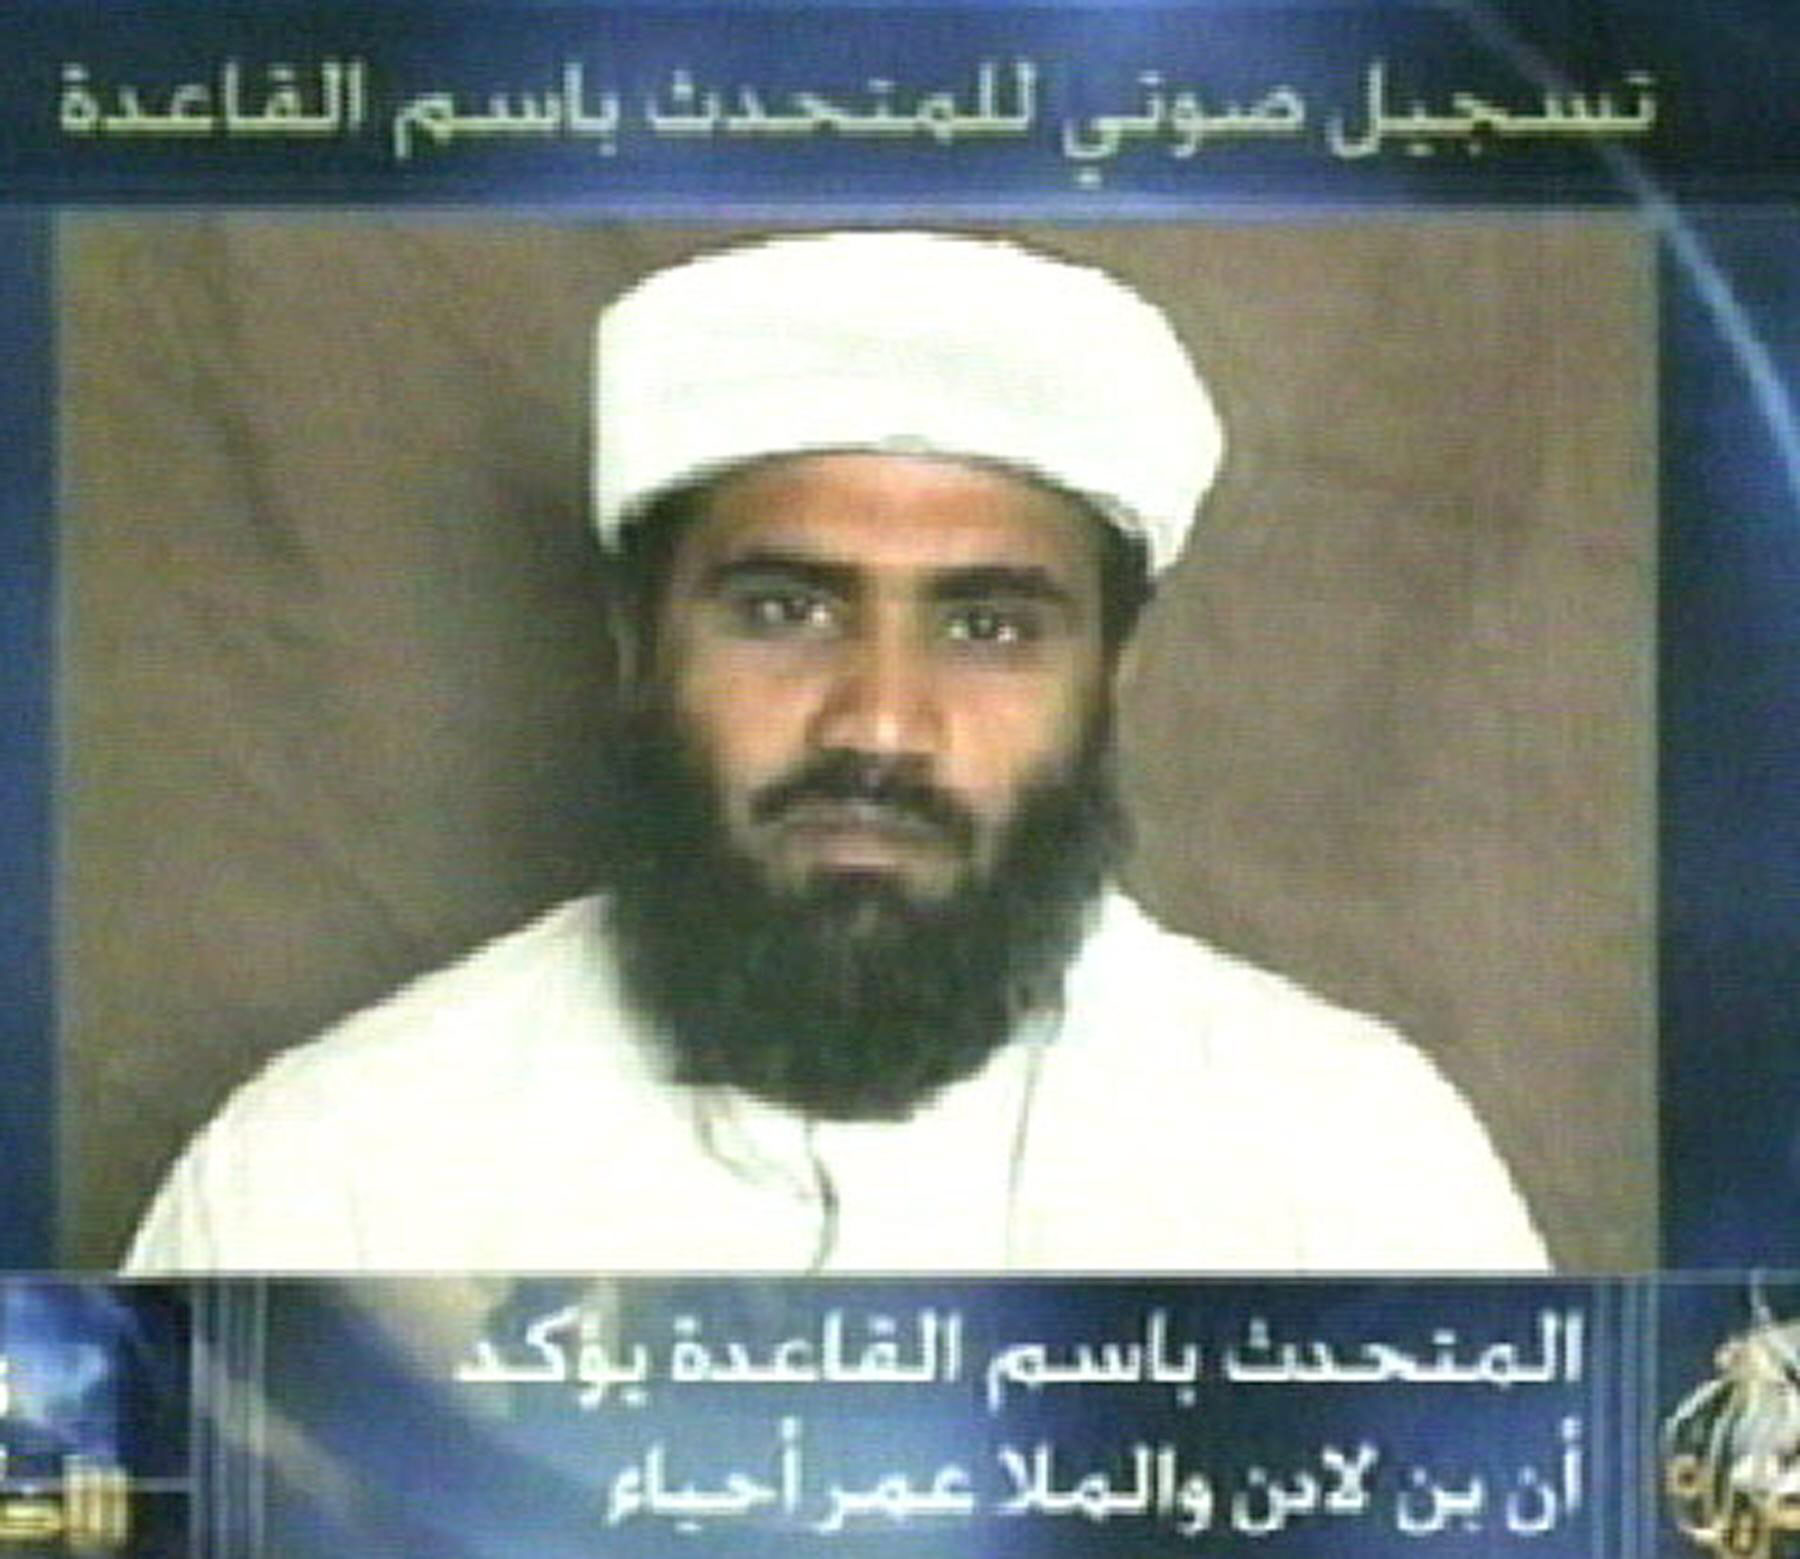 El yerno de Bin Laden, Suleiman Abu Ghaith, fue detenido ilegalmente por Estados Unidos